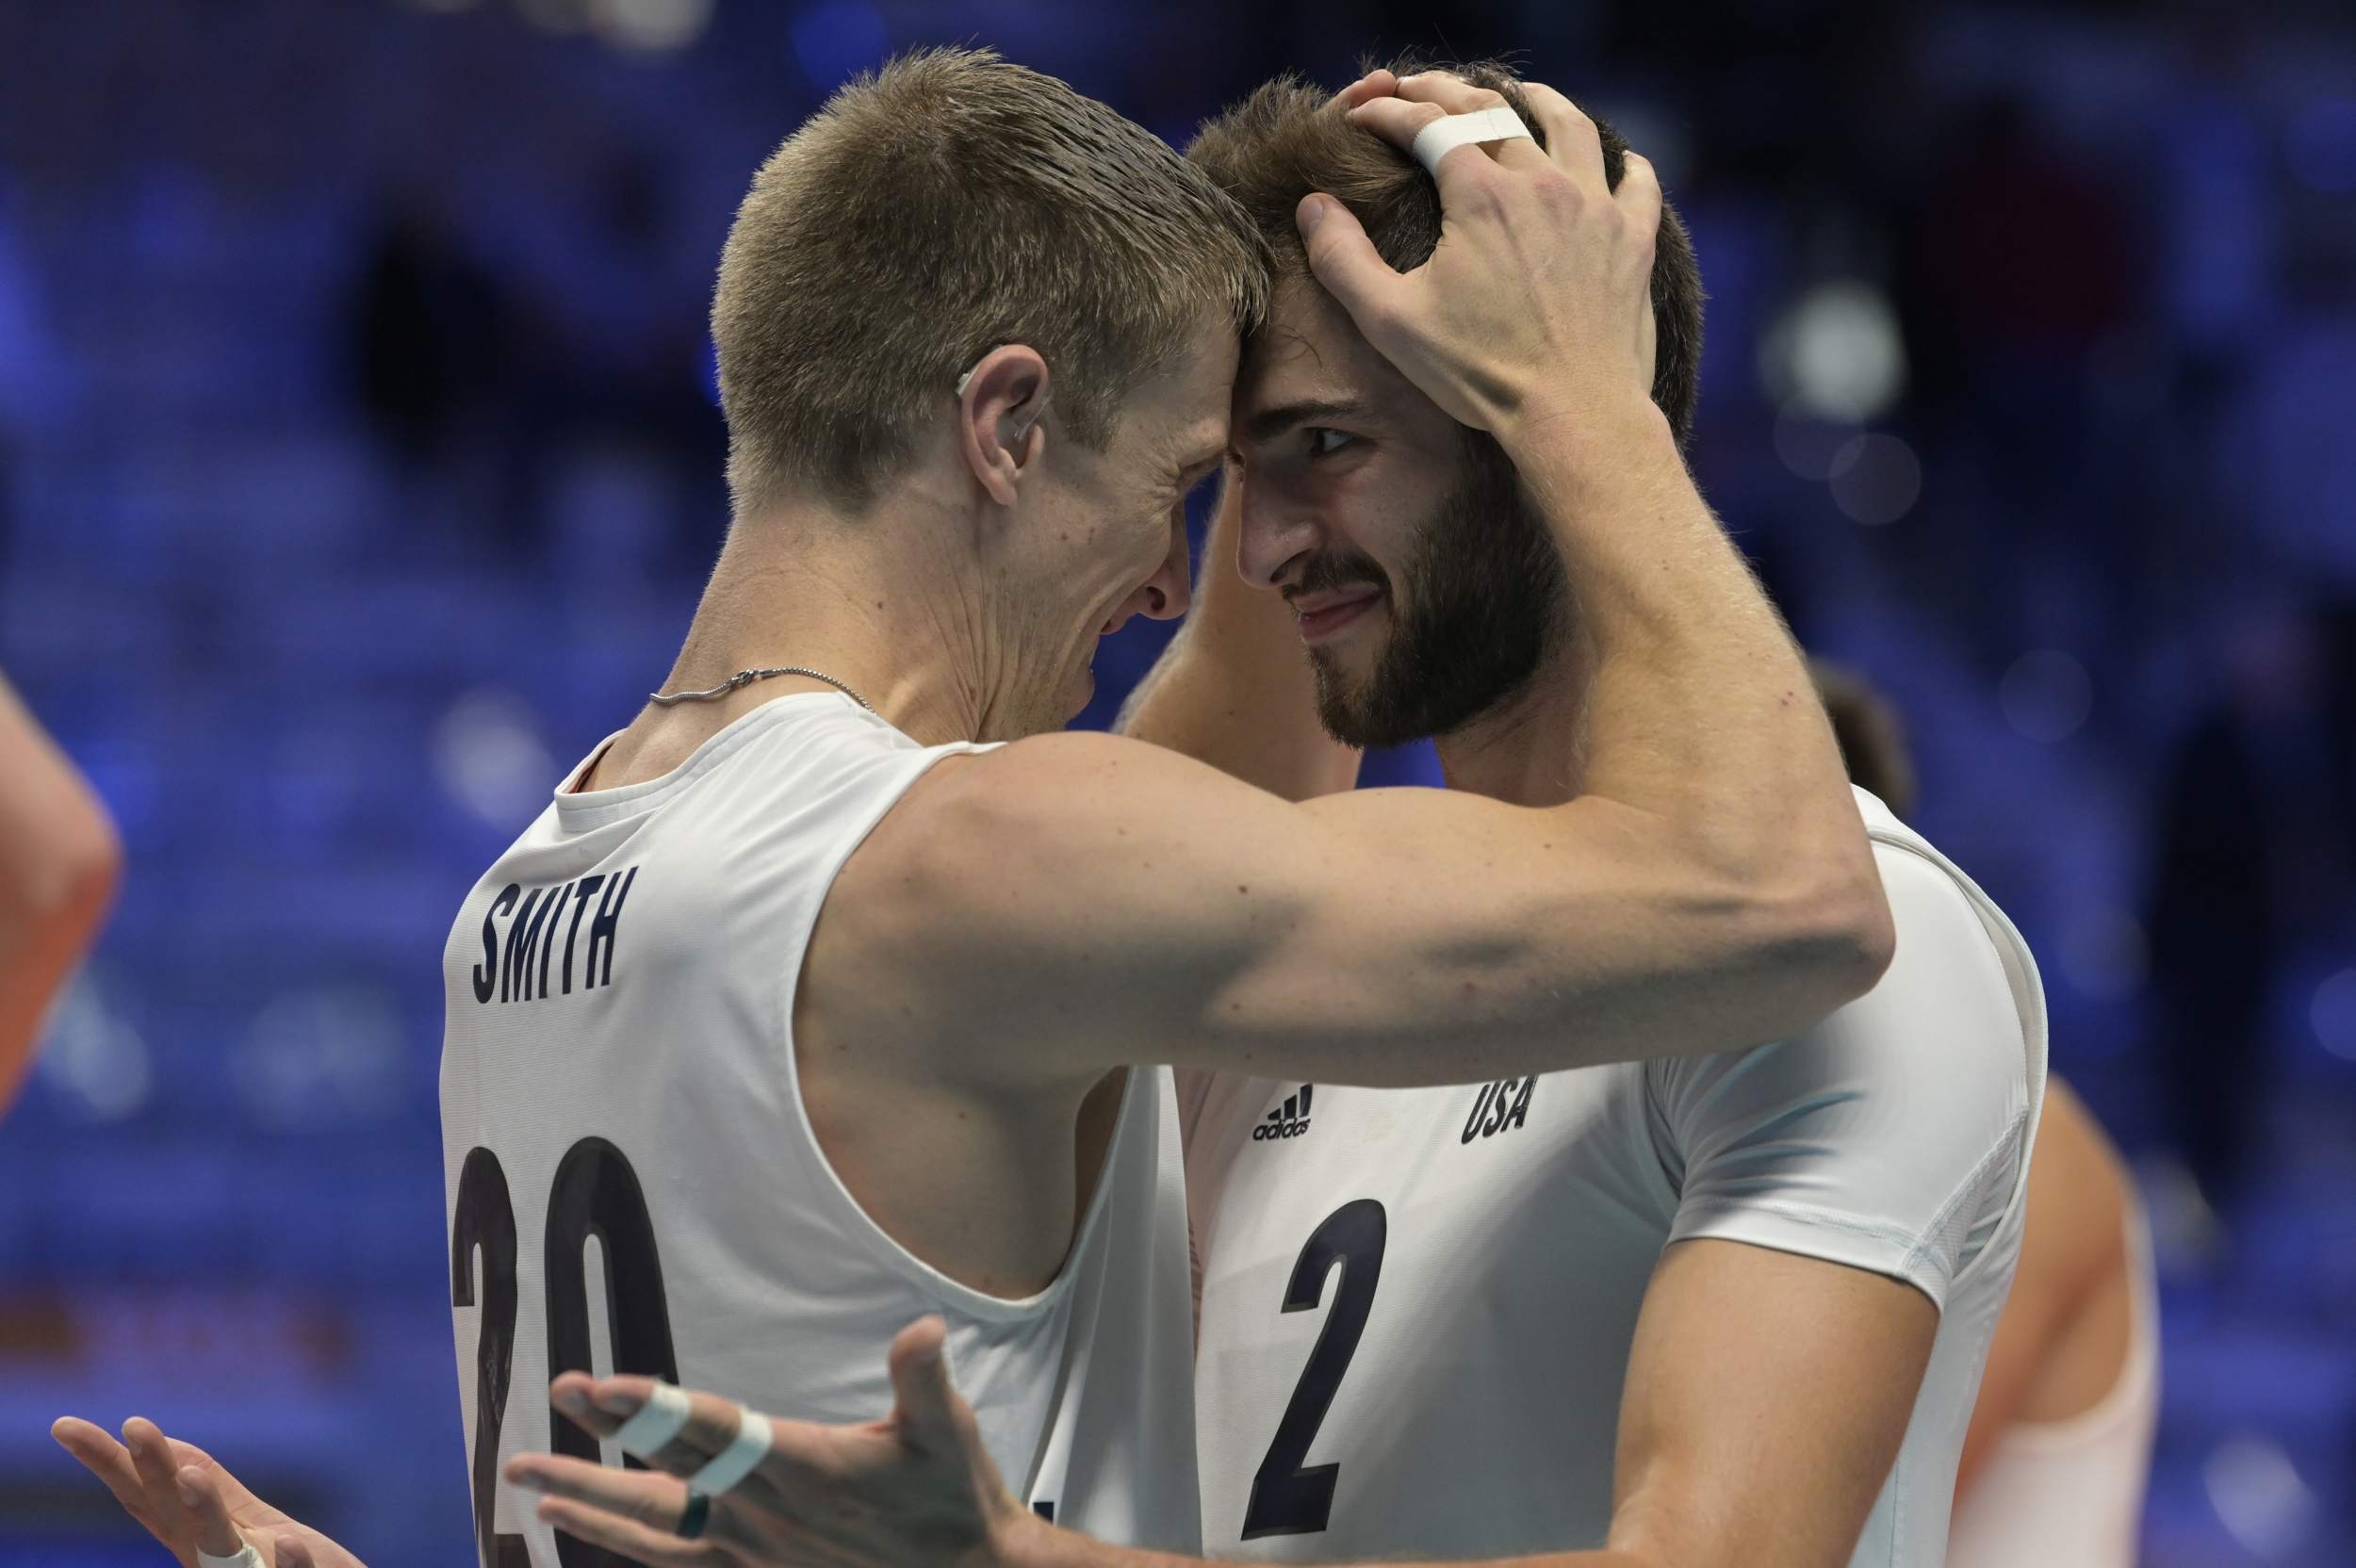 Сърбия се класира на полуфиналите на световното първенство по волейбол